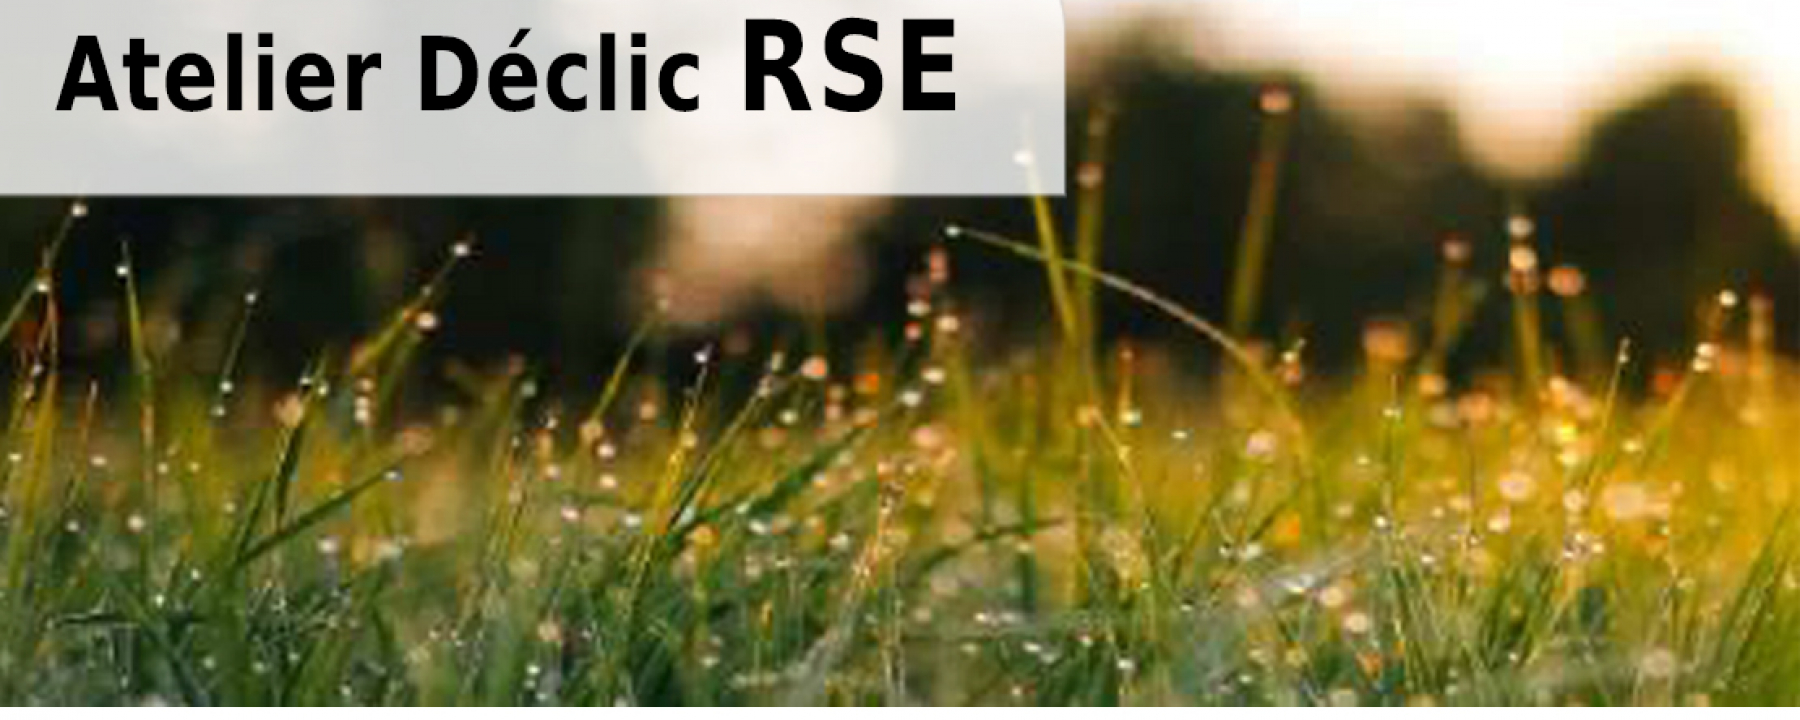 Atelier Déclic RSE - La RSE : définition, enjeux et perspectives pour les PME par CCI Paris